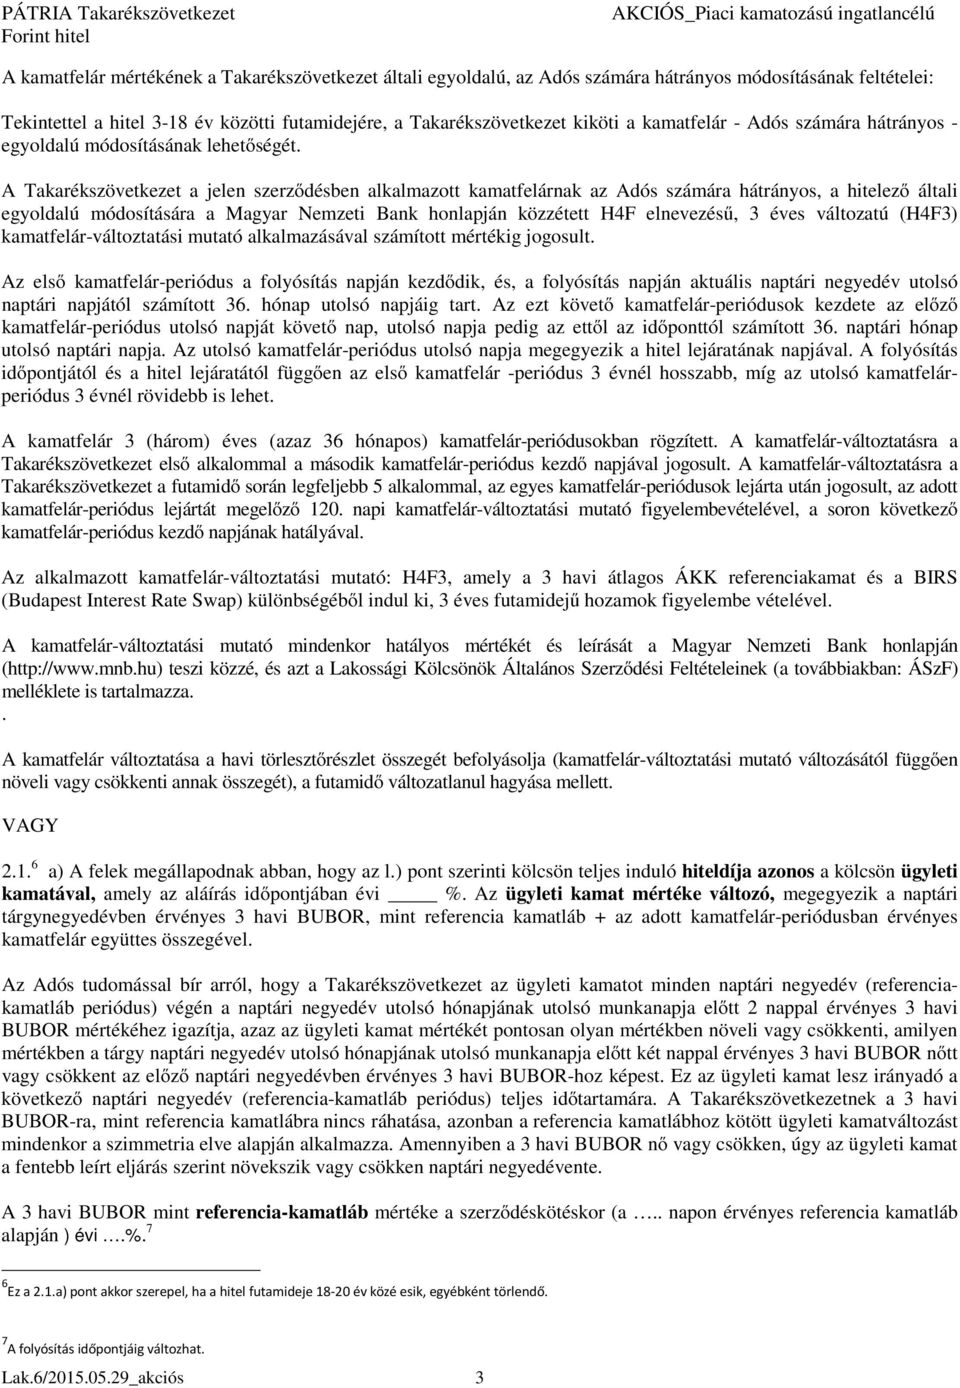 A Takarékszövetkezet a jelen szerződésben alkalmazott kamatfelárnak az Adós számára hátrányos, a hitelező általi egyoldalú módosítására a Magyar Nemzeti Bank honlapján közzétett H4F elnevezésű, 3